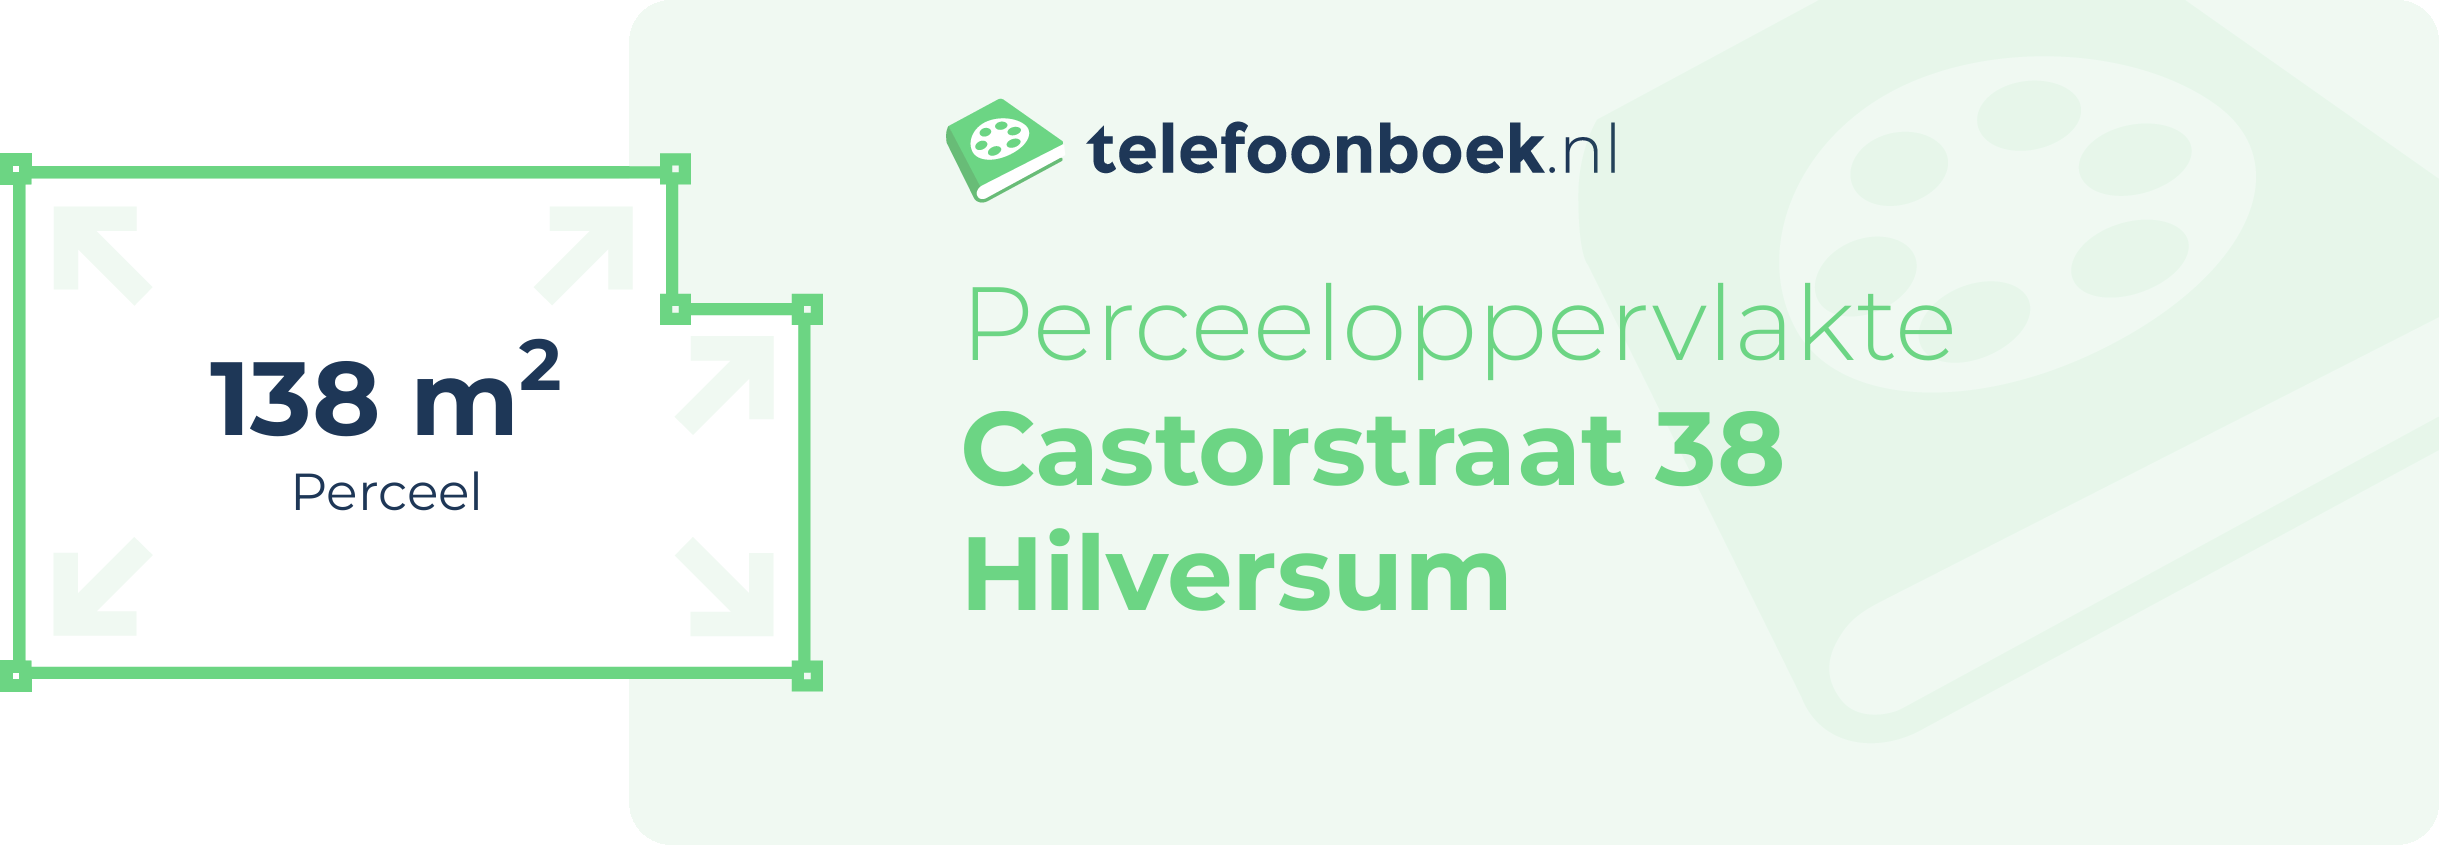 Perceeloppervlakte Castorstraat 38 Hilversum